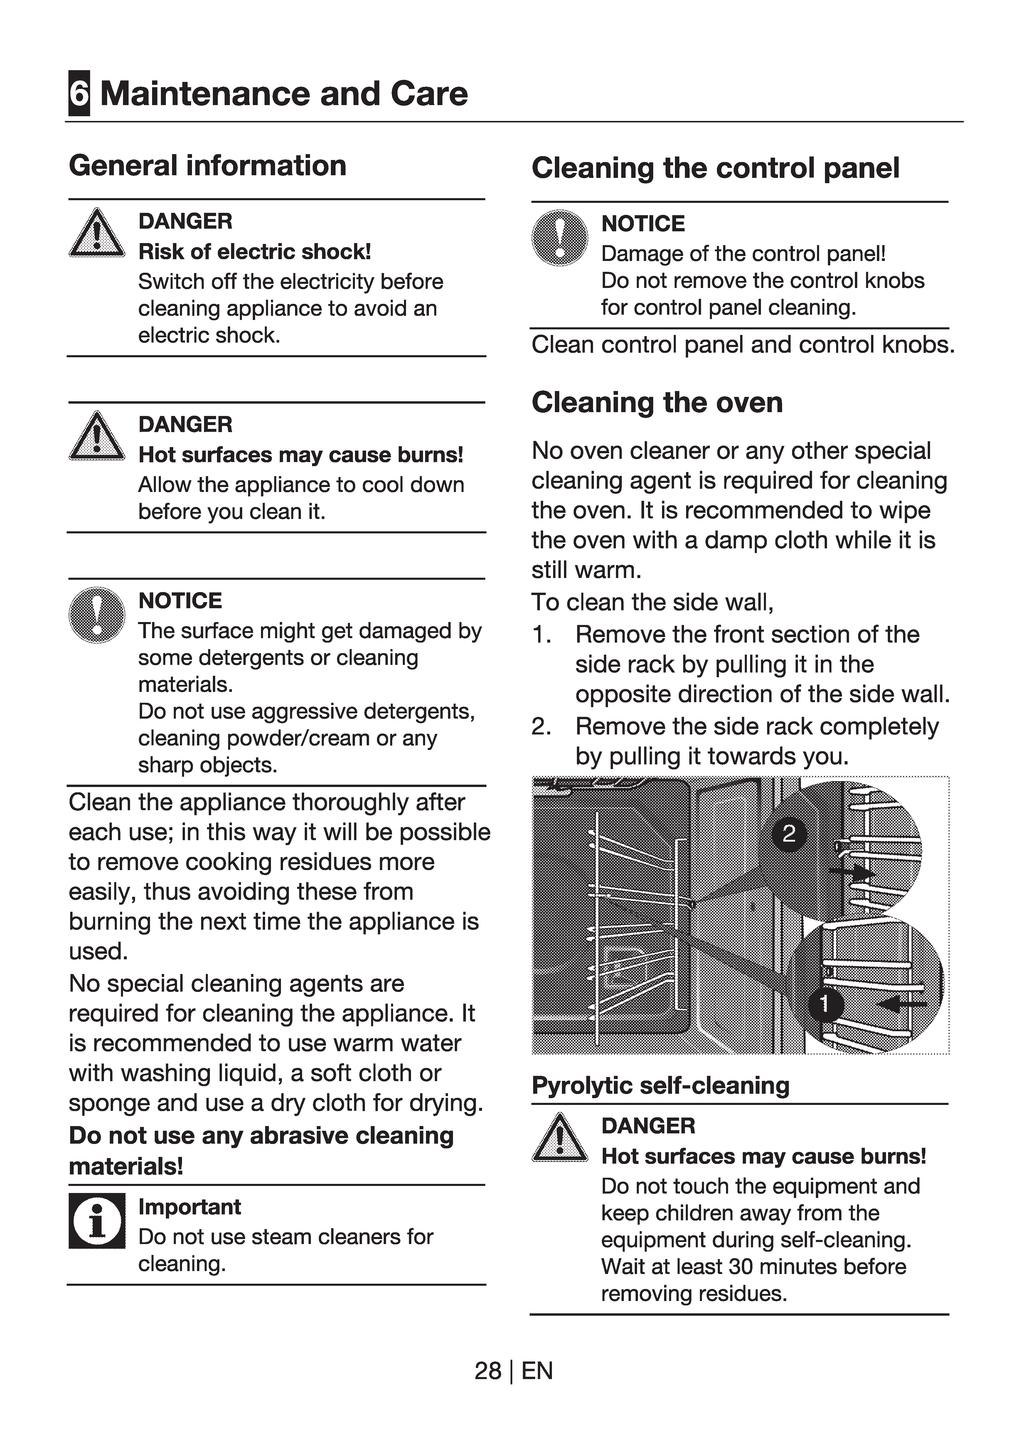 6 ODRŽAVANJE I ČIŠĆENJE Osnovne informacije Opasnost. Rizik od električnog šoka. Opasnost. Rizik od opekotina. Napomena. Rizik od oštećenja uređaja. Očistite uređaj dobro poslije svakog korištenja.